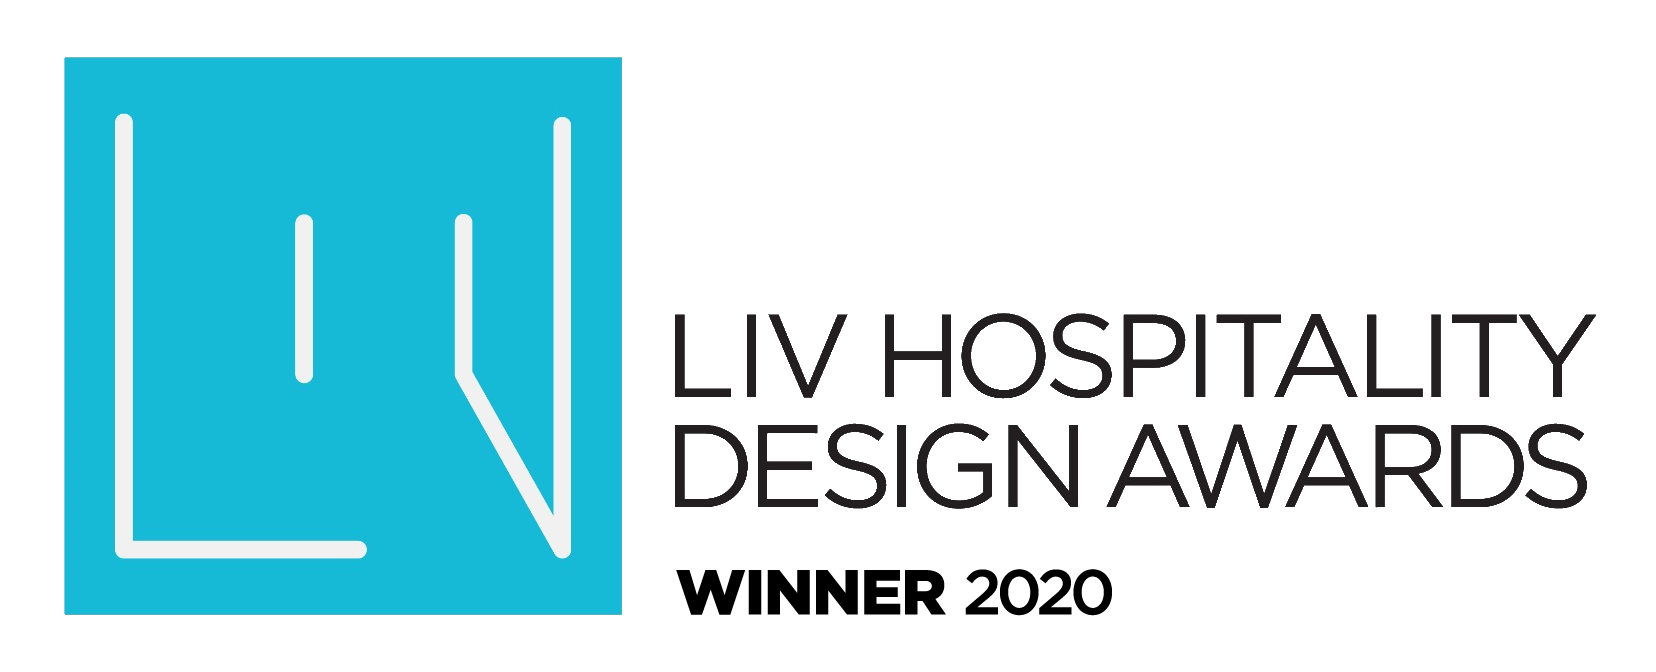 Liv Hospitality Design Awards Nca Studio Inc